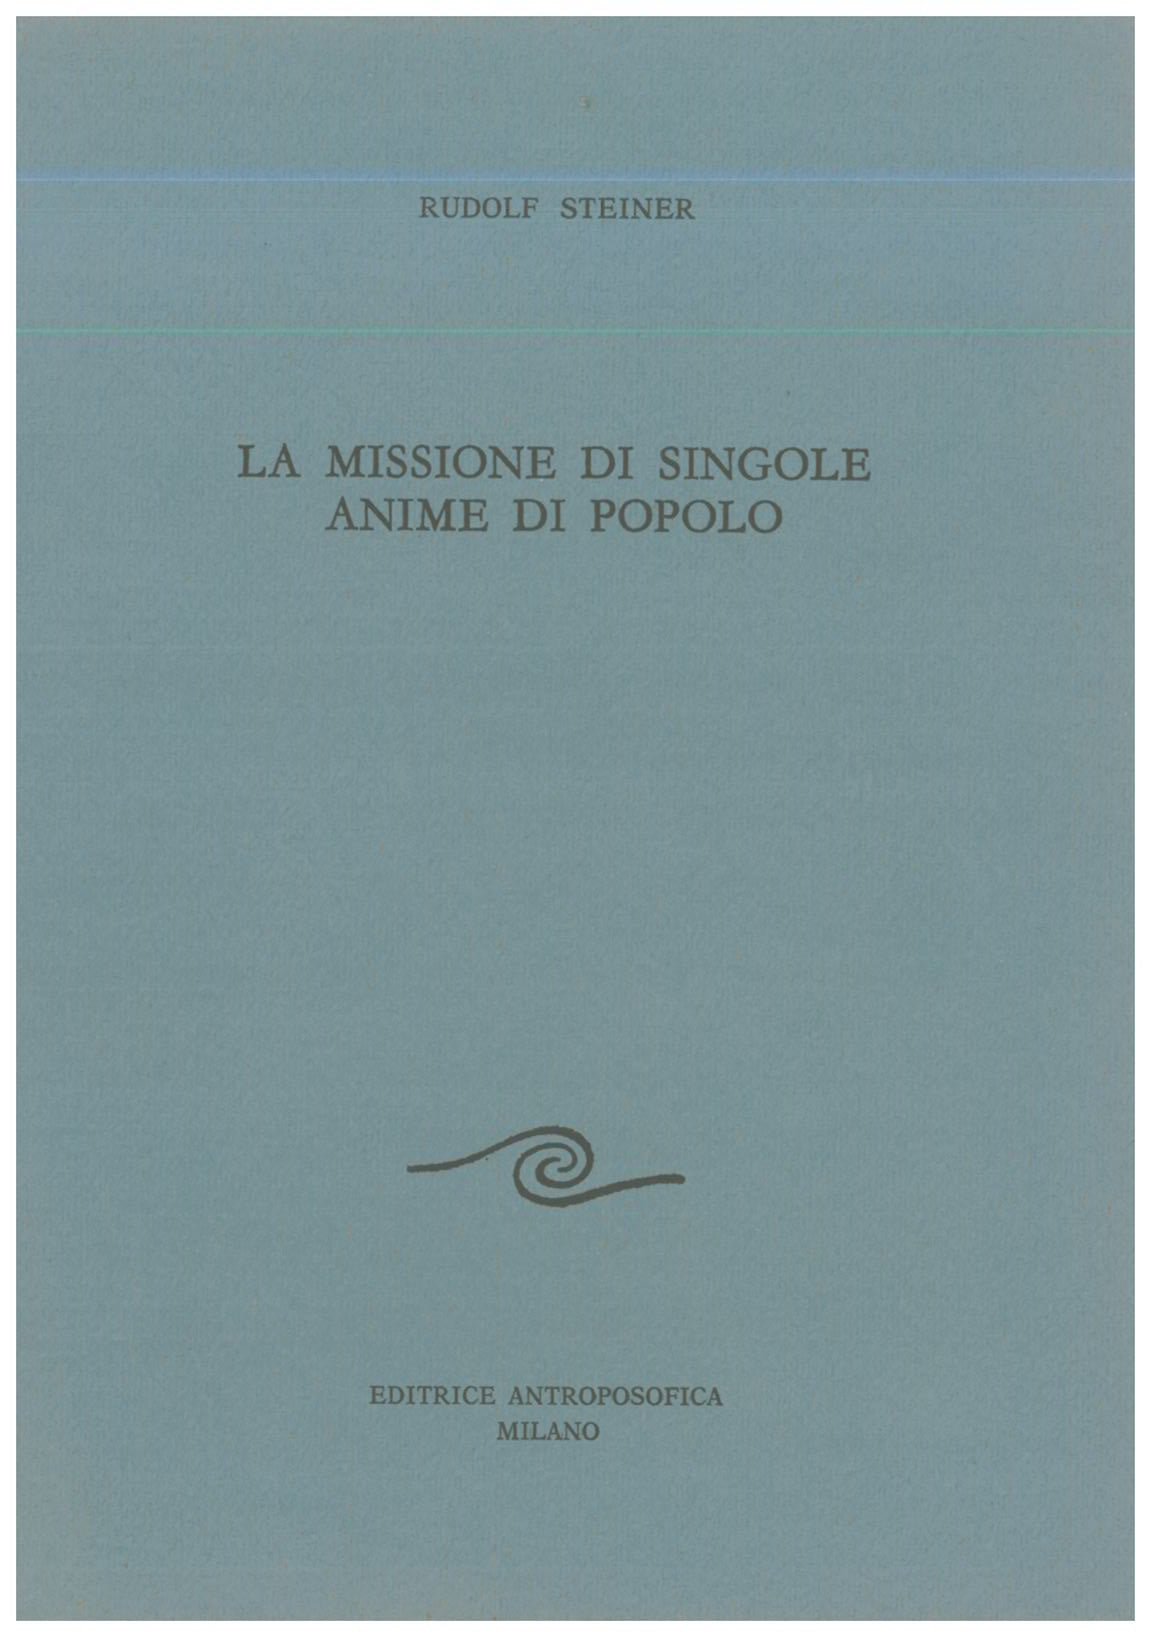 La missione di singole anime di popolo - Rudolf Steiner